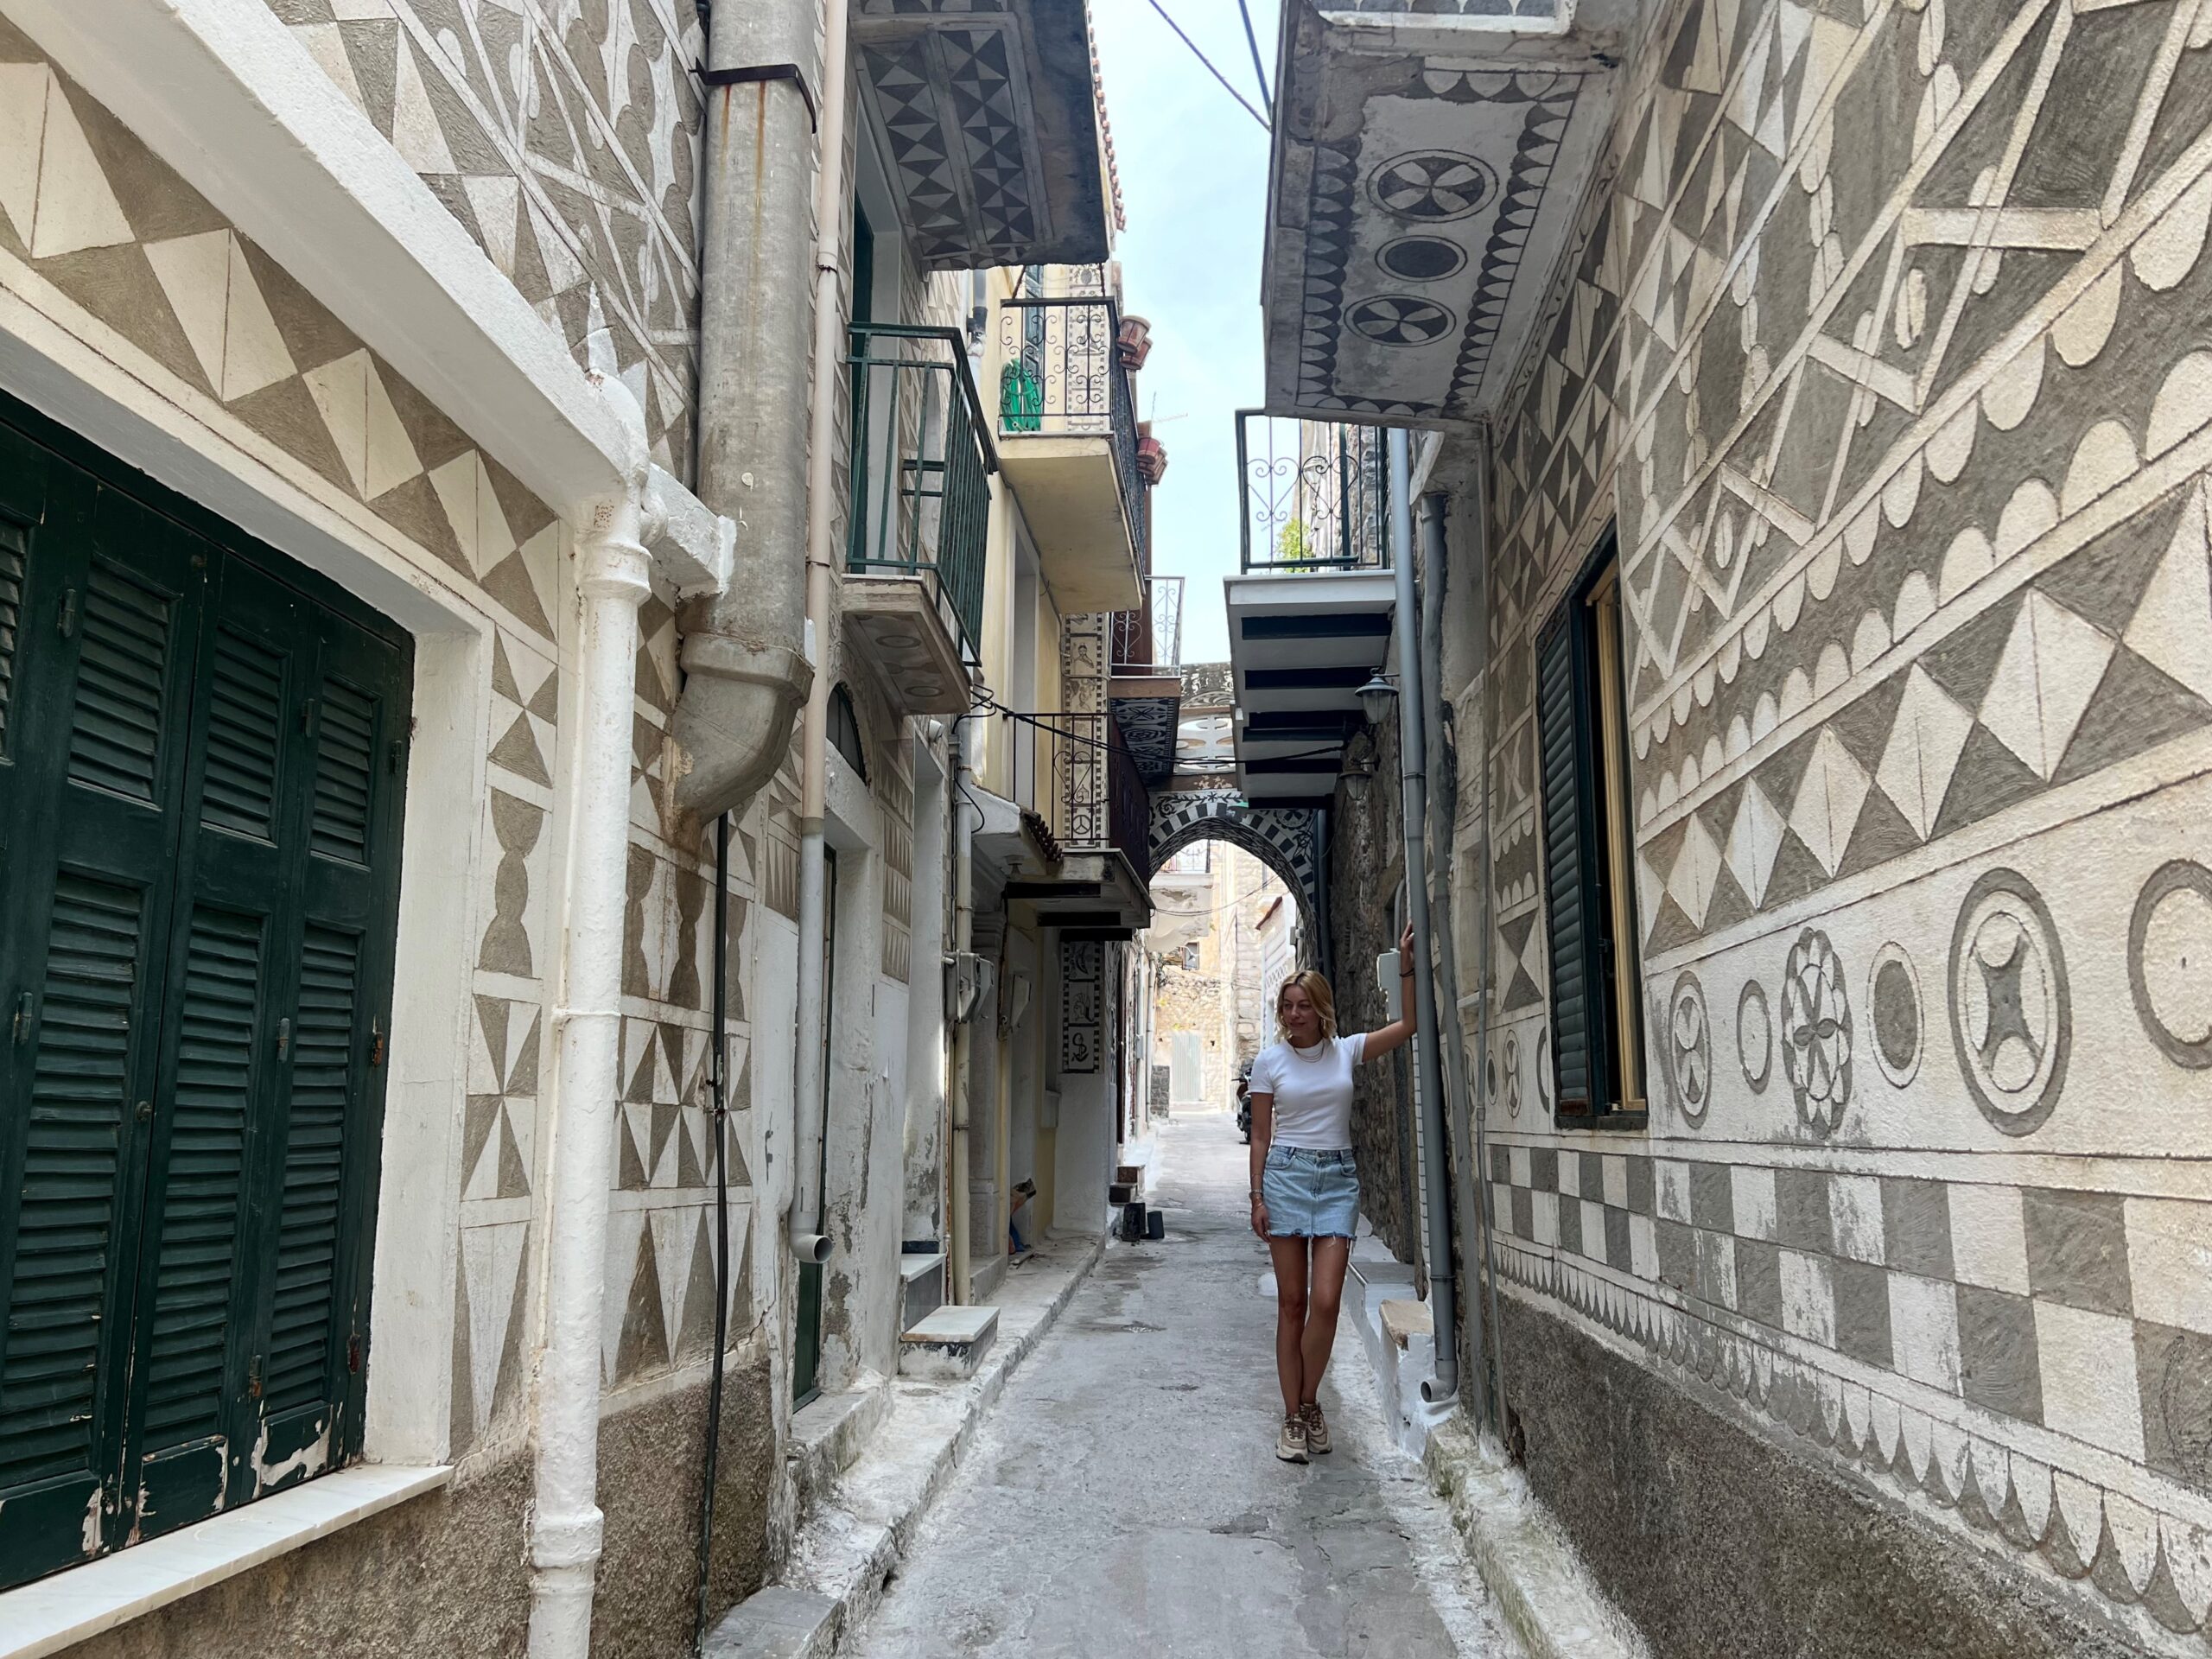 Πυργί: Το travelgirl.gr σε ξεναγεί στο "ζωγραφιστό χωριό" της Χίου βγαλμένο από άλλη εποχή!